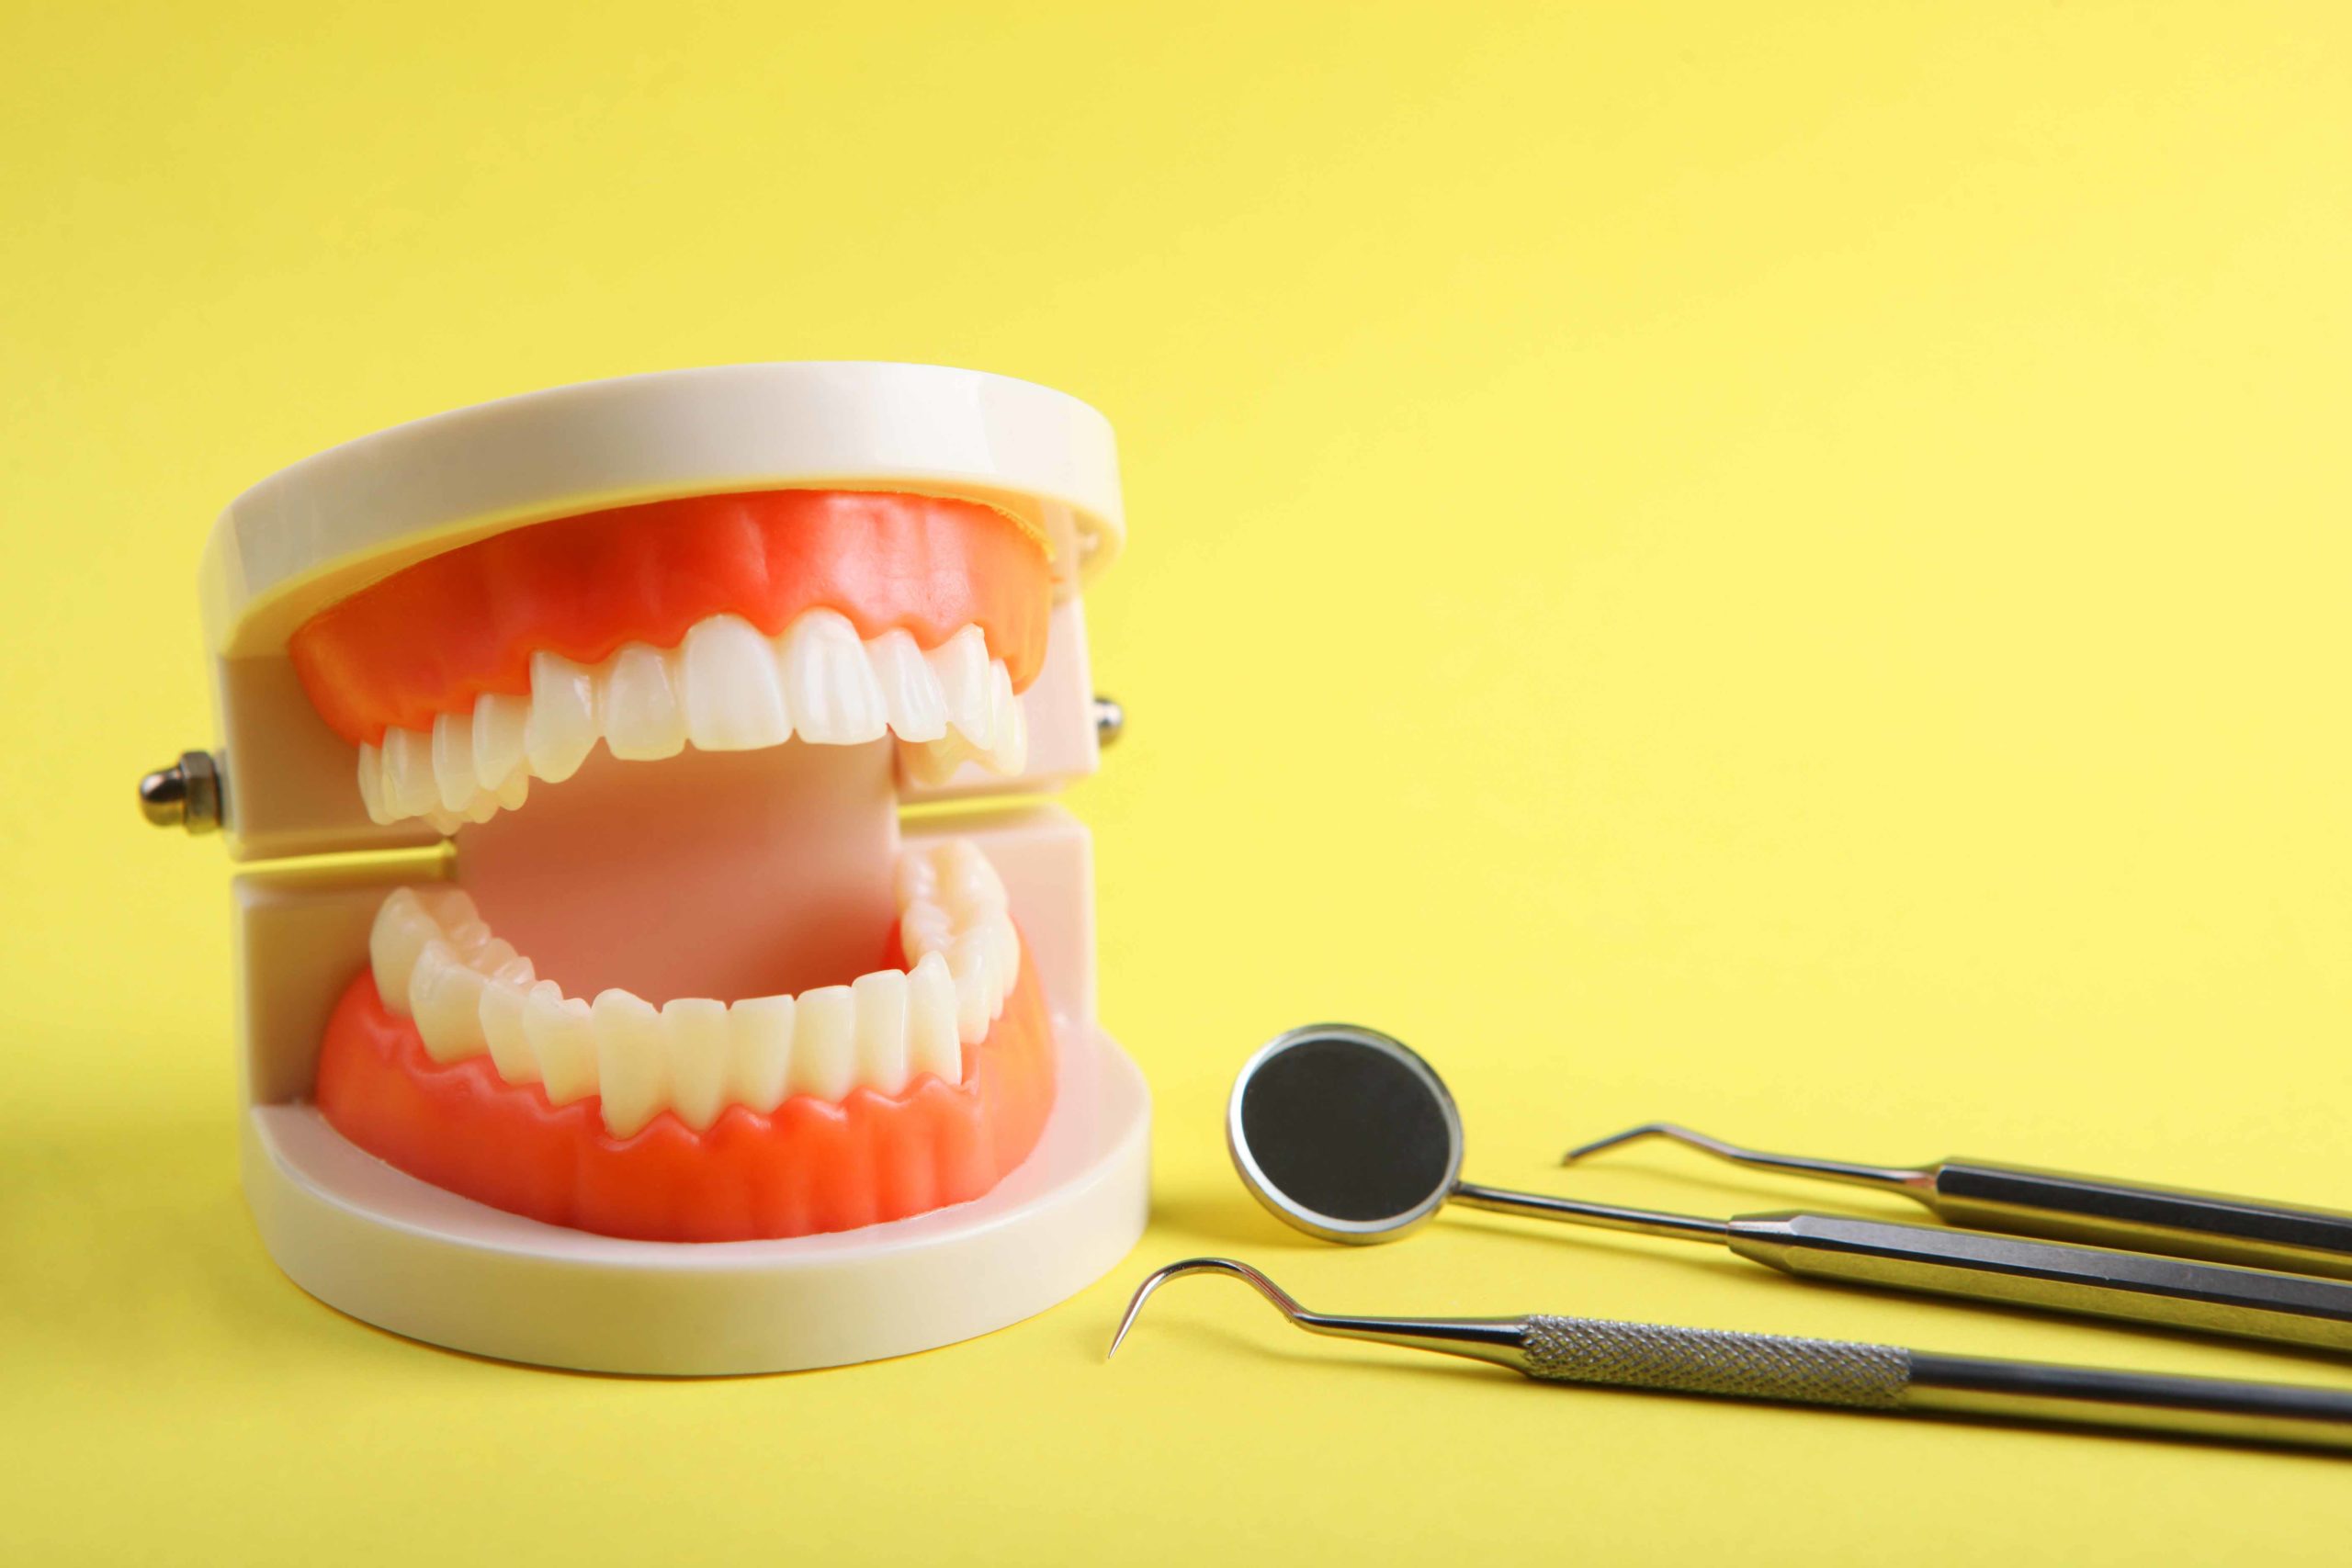 黄色い背景の前に歯の模型と治療器具が置かれている